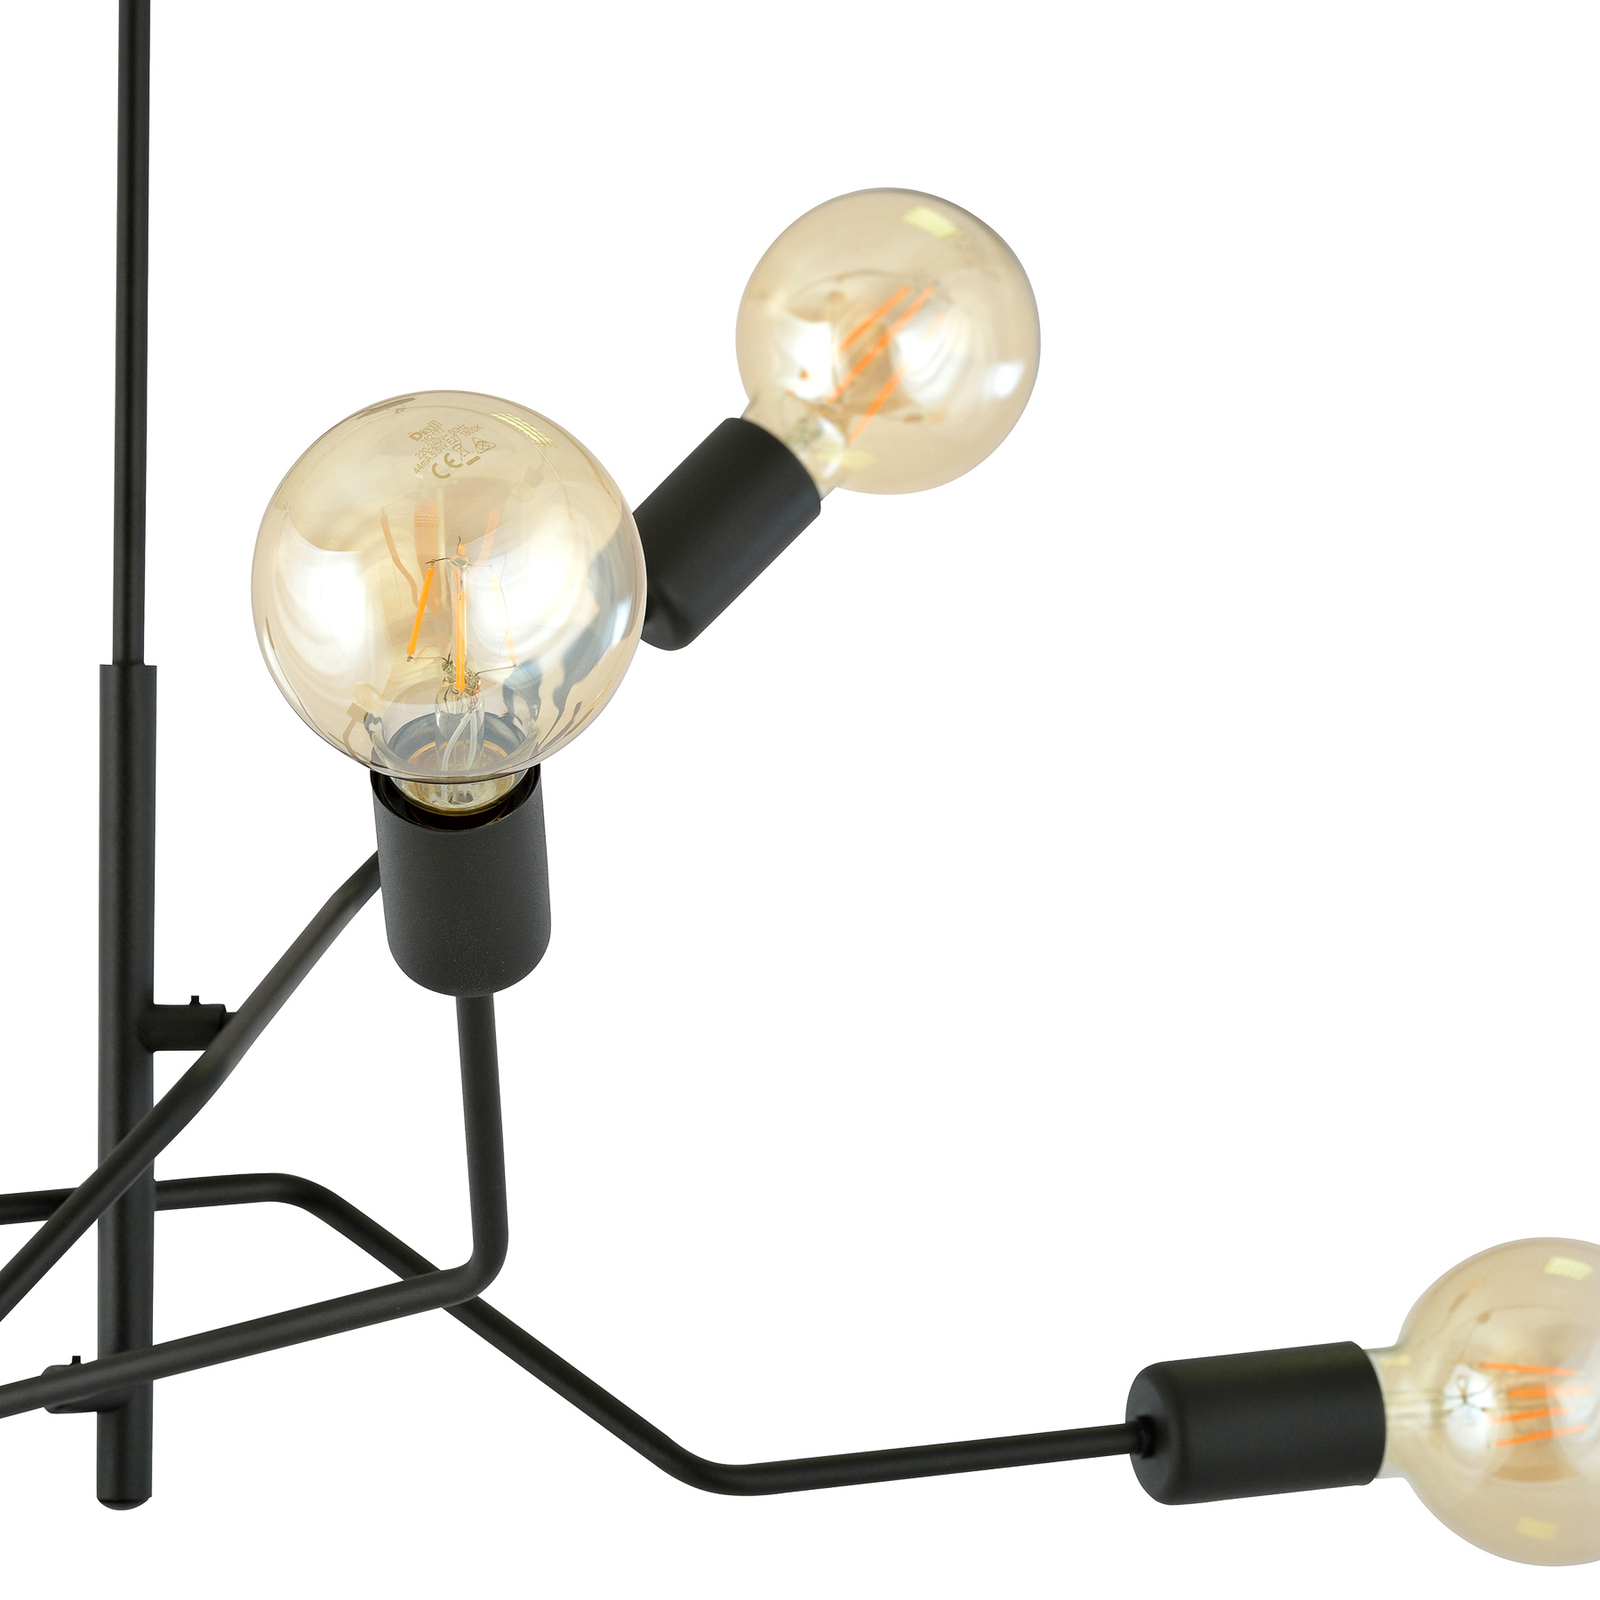 Frix ceiling lamp, black, six-bulb